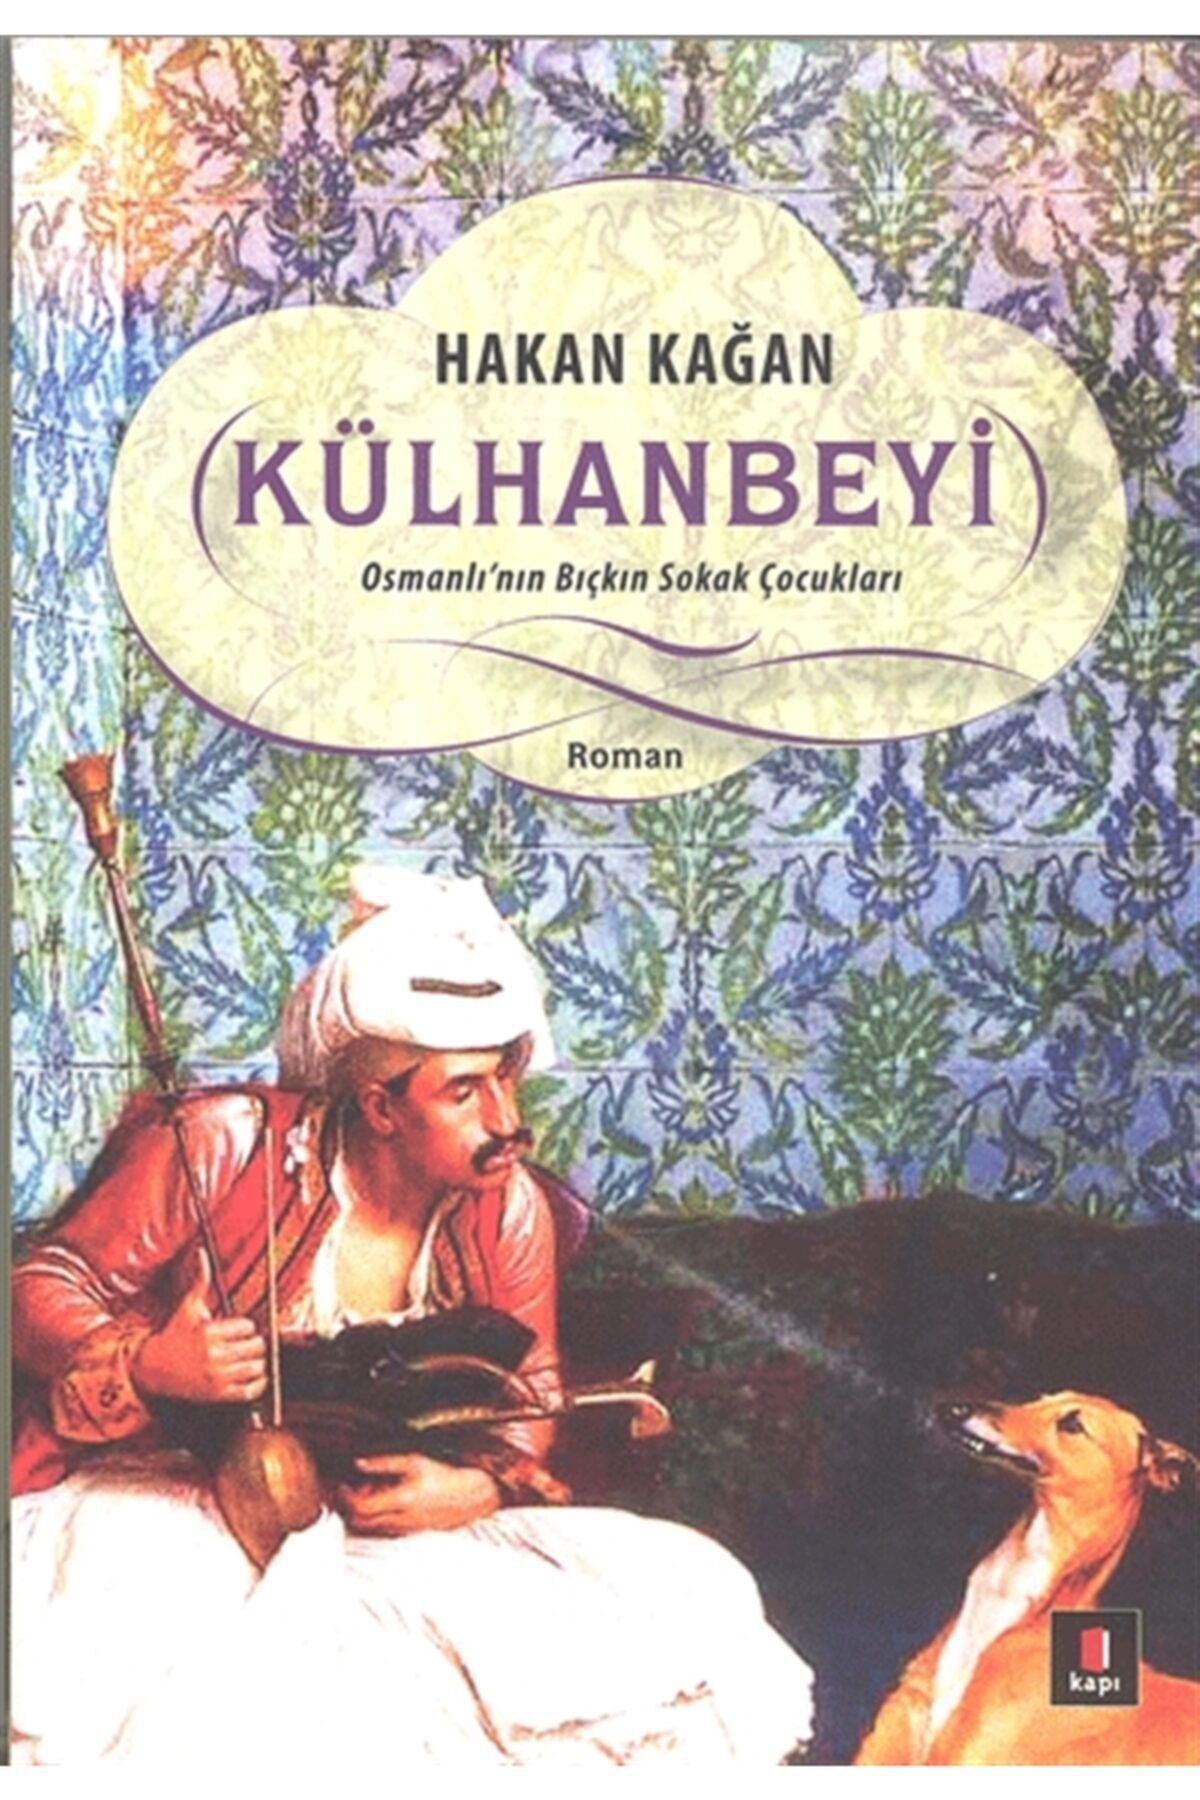 Kapı Yayınları Külhanbeyi & Osmanlı'nın Bıçkın Sokak Çocukları